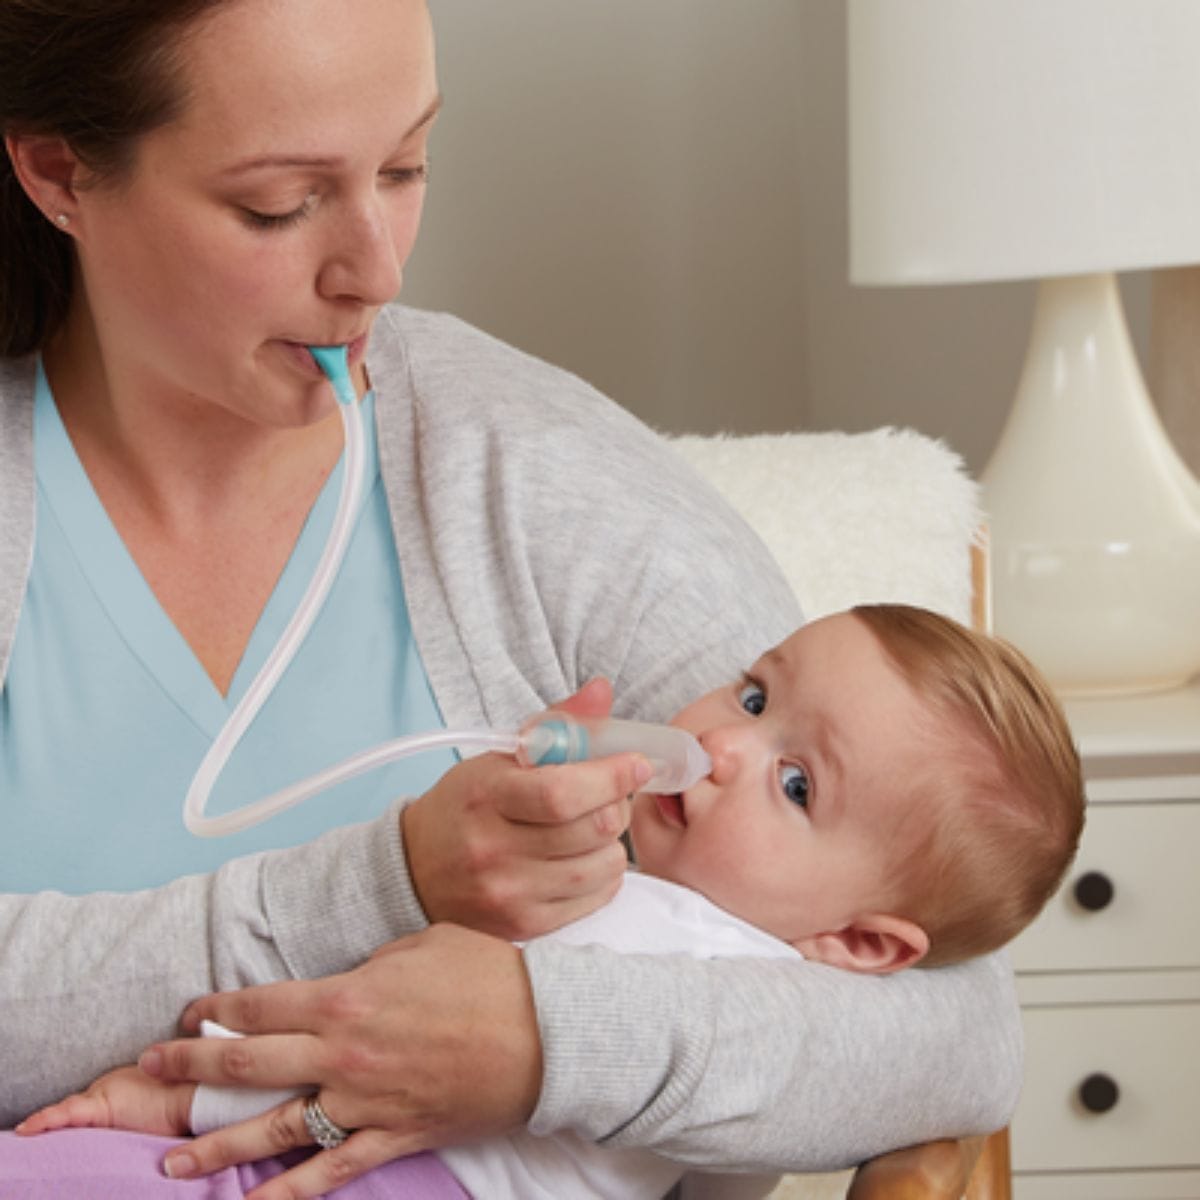 Wanneer je kleintje last heeft van een verkoudheid, is dat natuurlijk ontzettend vervelend. Met de Braun neusaspirator of neusreiniger zuig je snot en slijm uit de neus van je kindje, zodat je baby of kind weer vrijer kan ademen. VanZus